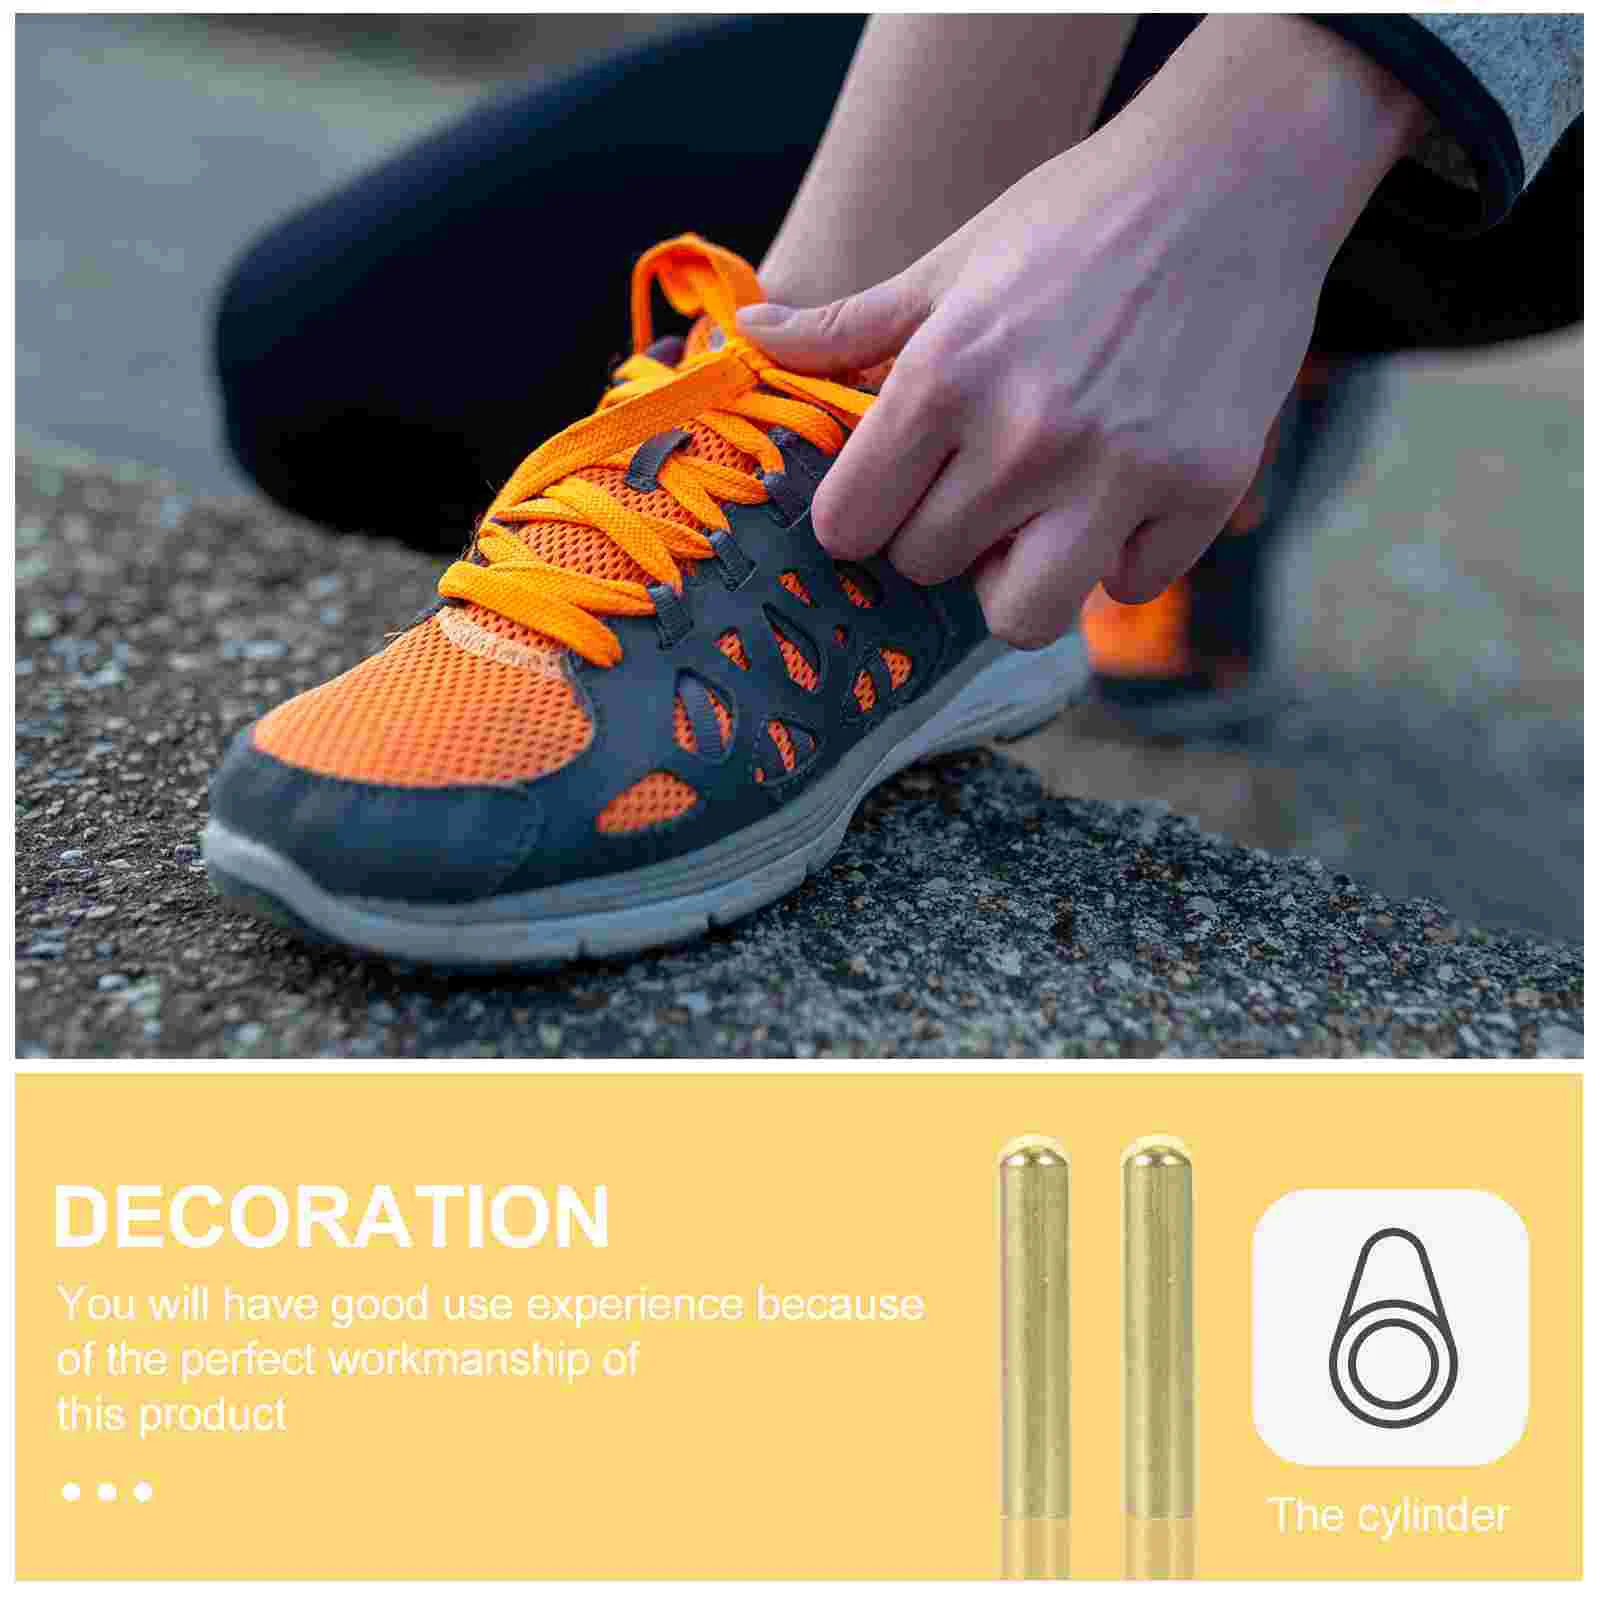 20 ks kov knoflík bota tkaničky tkanička příslušenství tipy bezešvý shoestring pro DIY spona částí